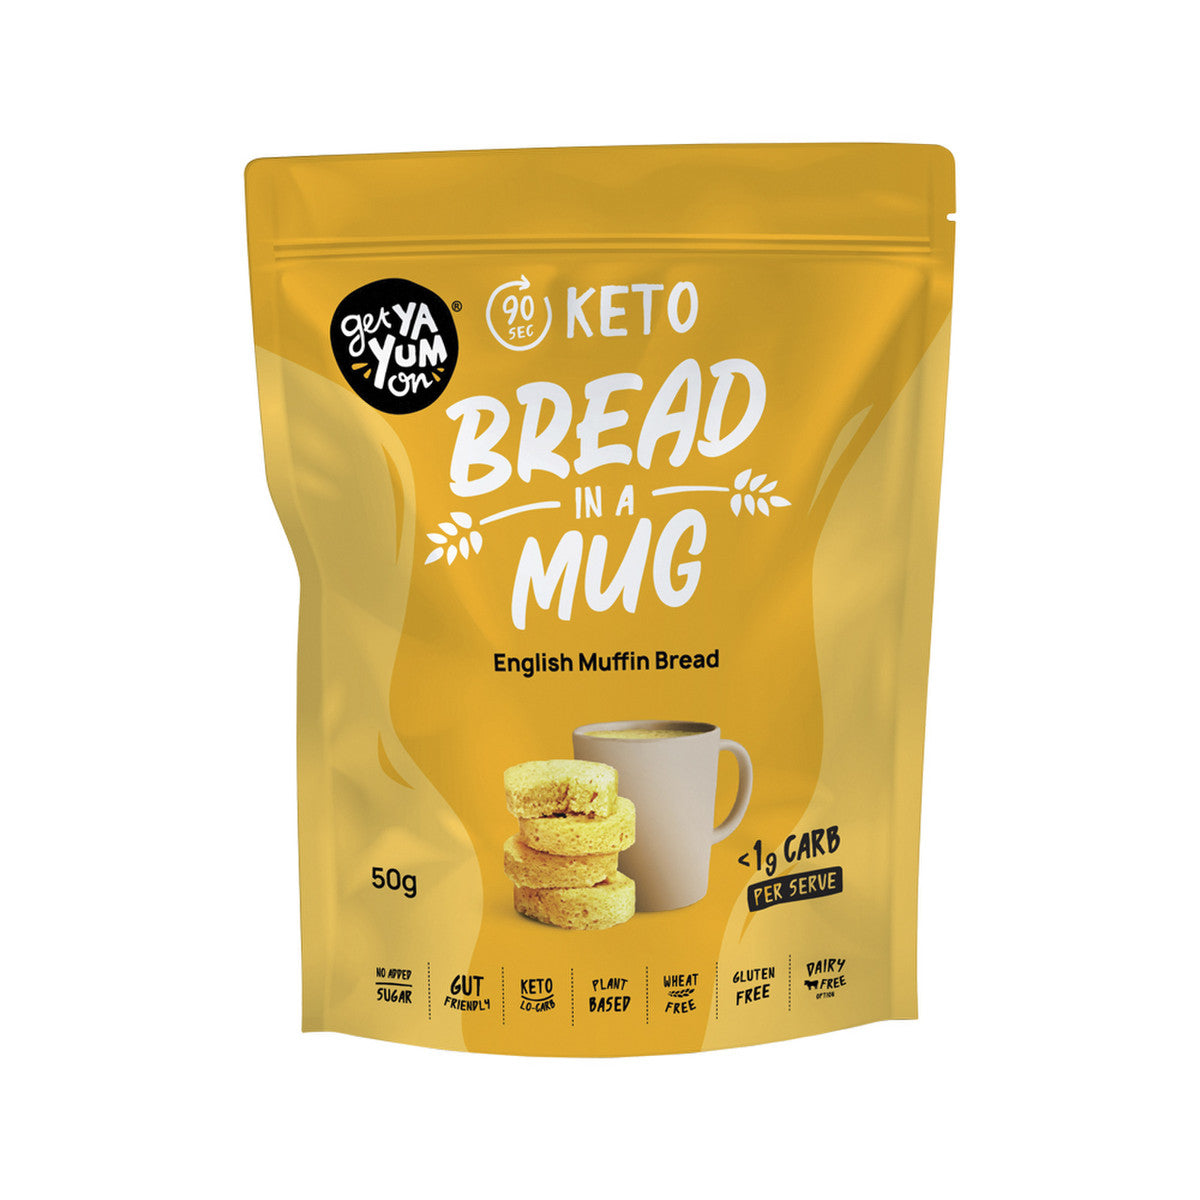 Get Ya Yum On - Bread In A Mug English Muffin Bread